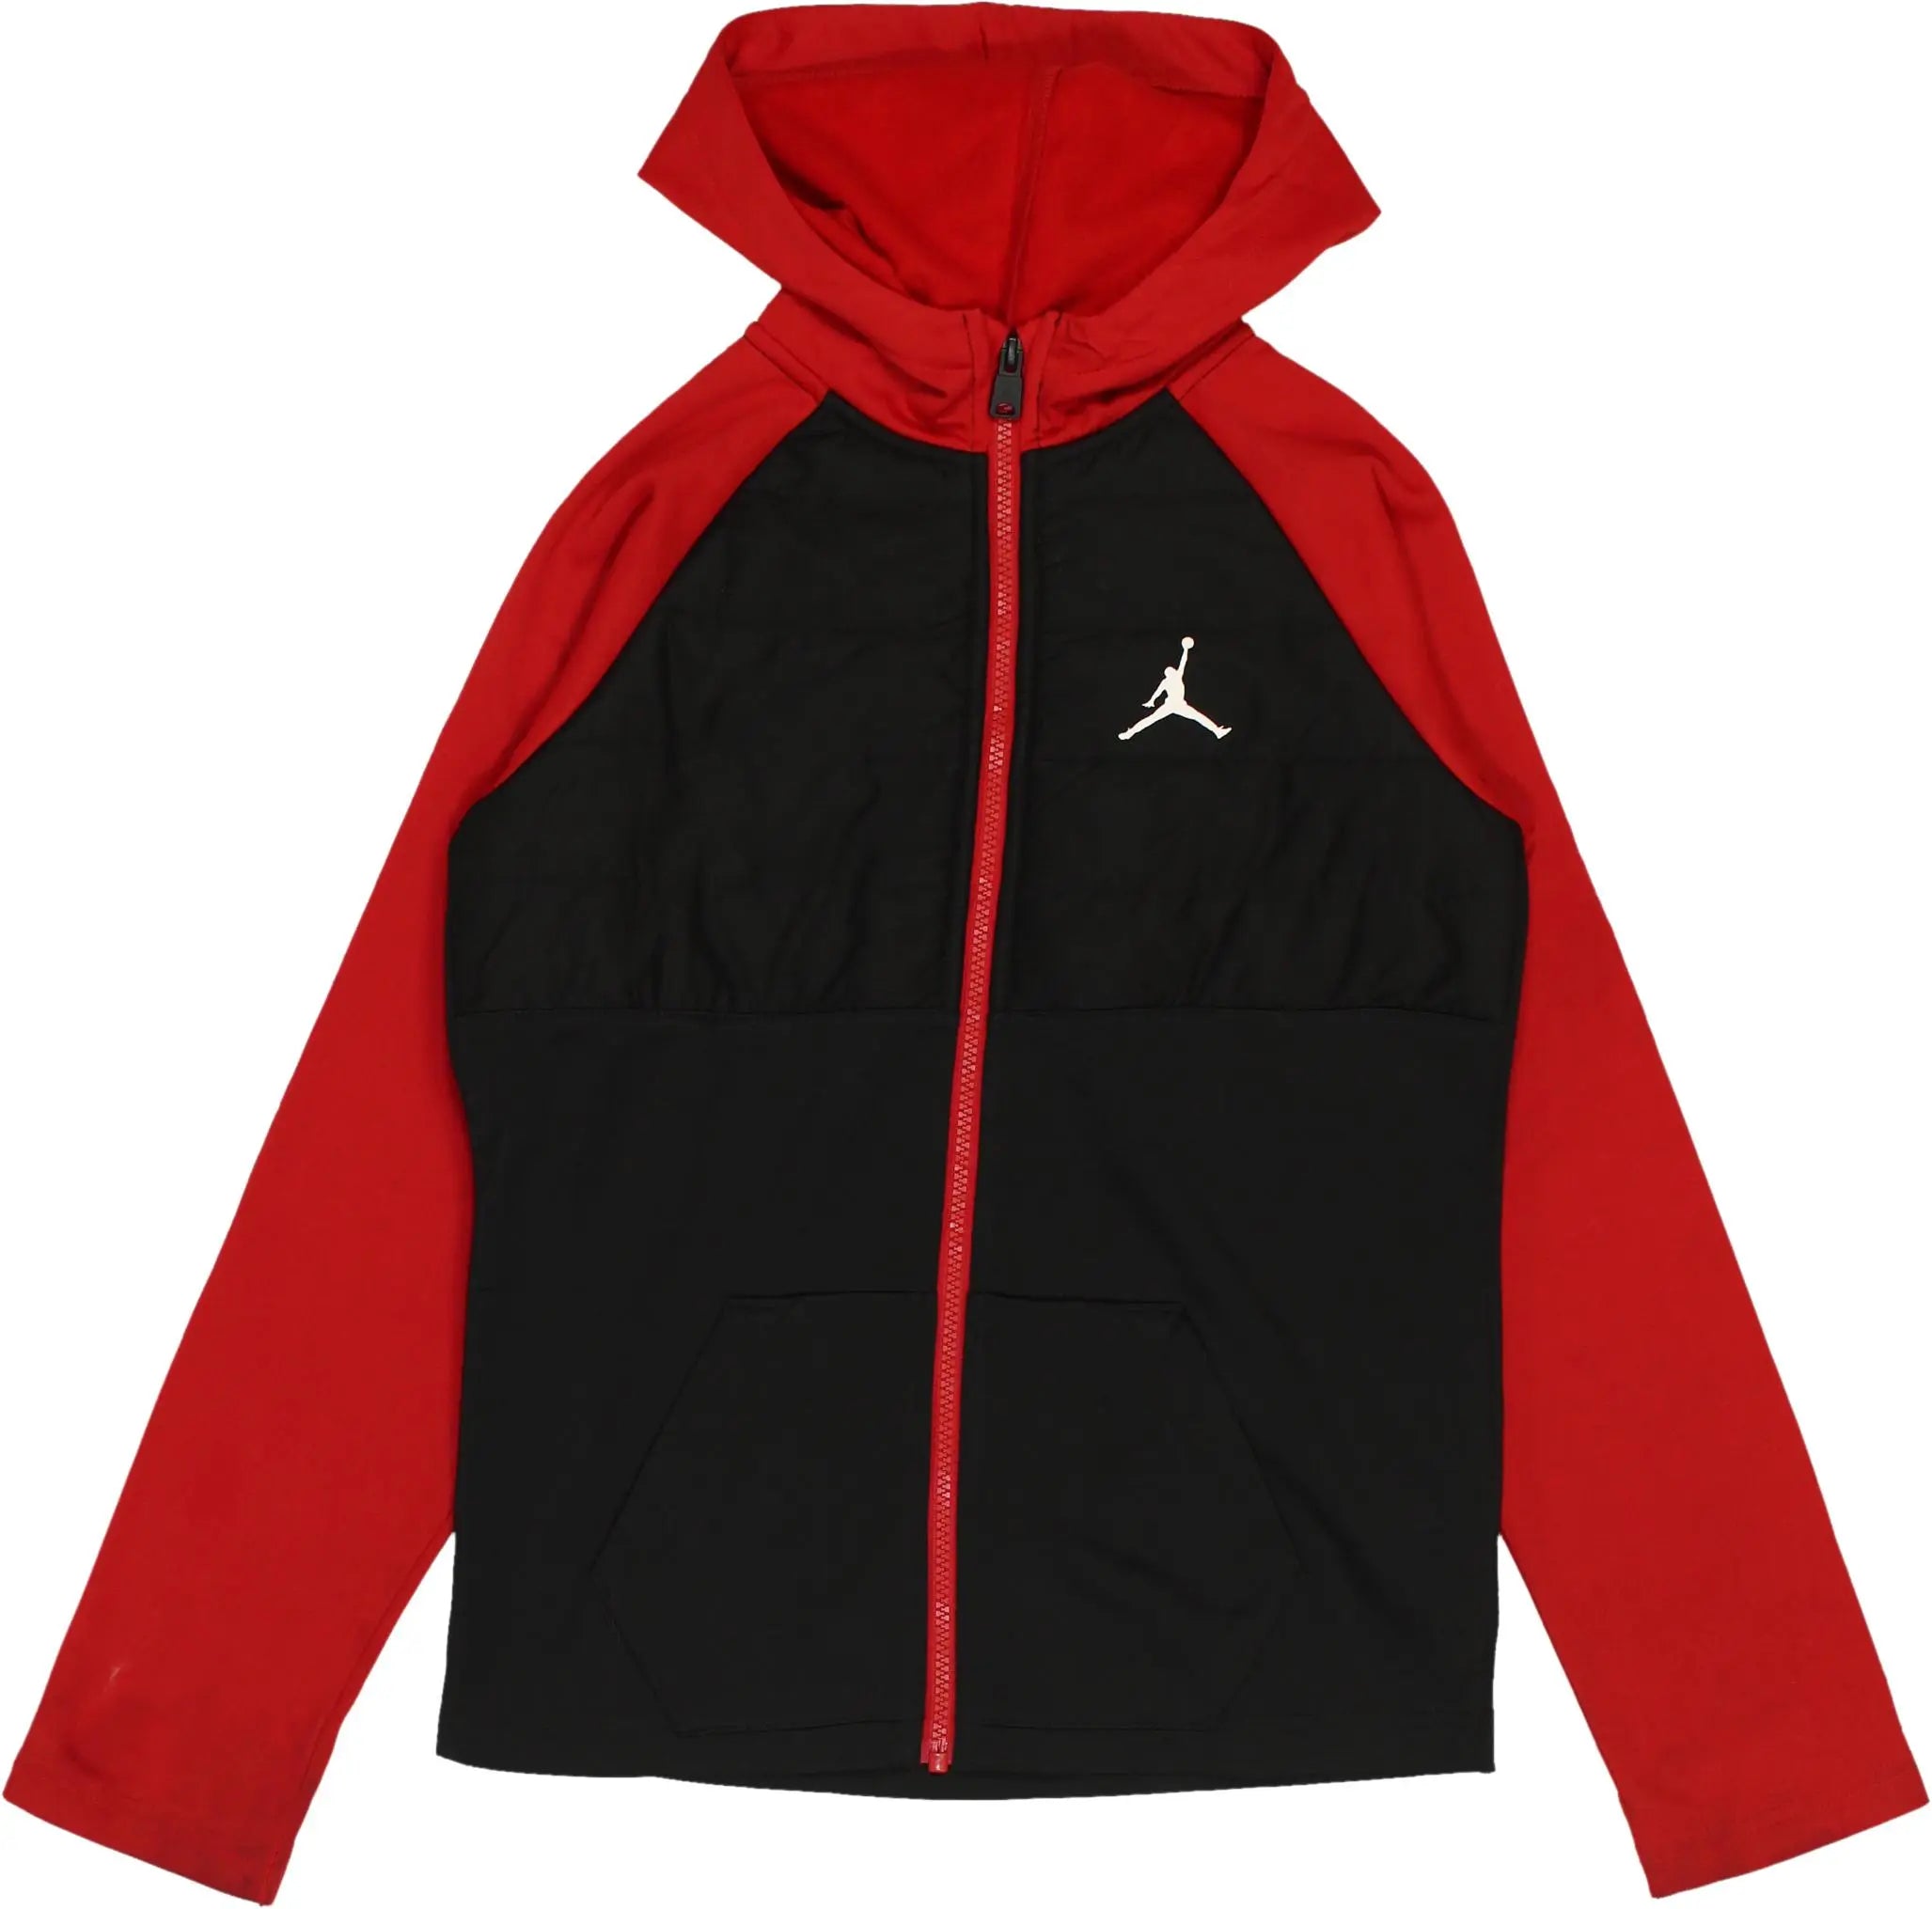 Jordan - Jordan track jacket- ThriftTale.com - Vintage and second handclothing